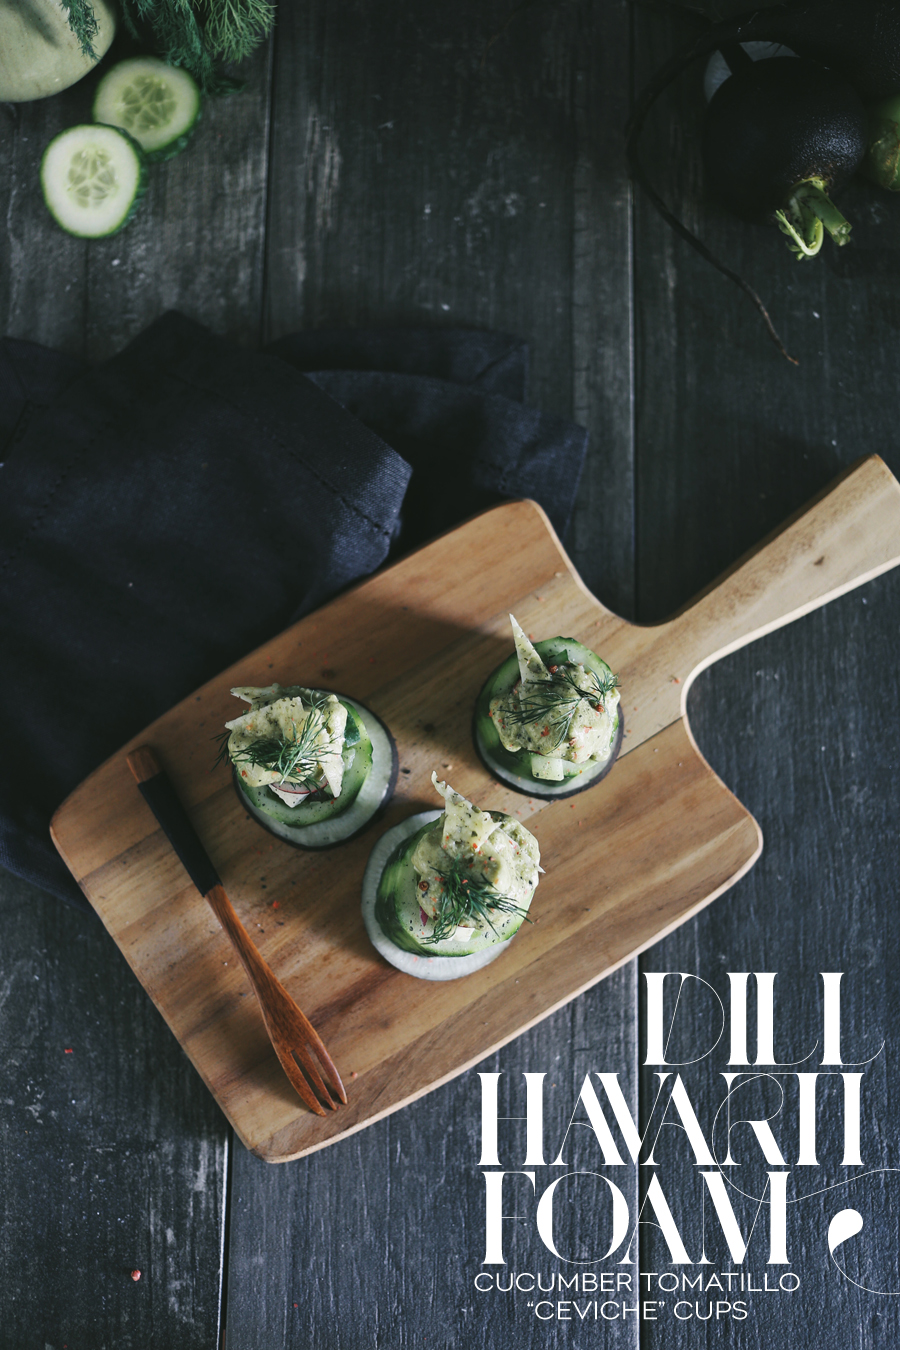 Cucumber Tomatillo Ceviche | Dill Havarti Foam | Dine X Design